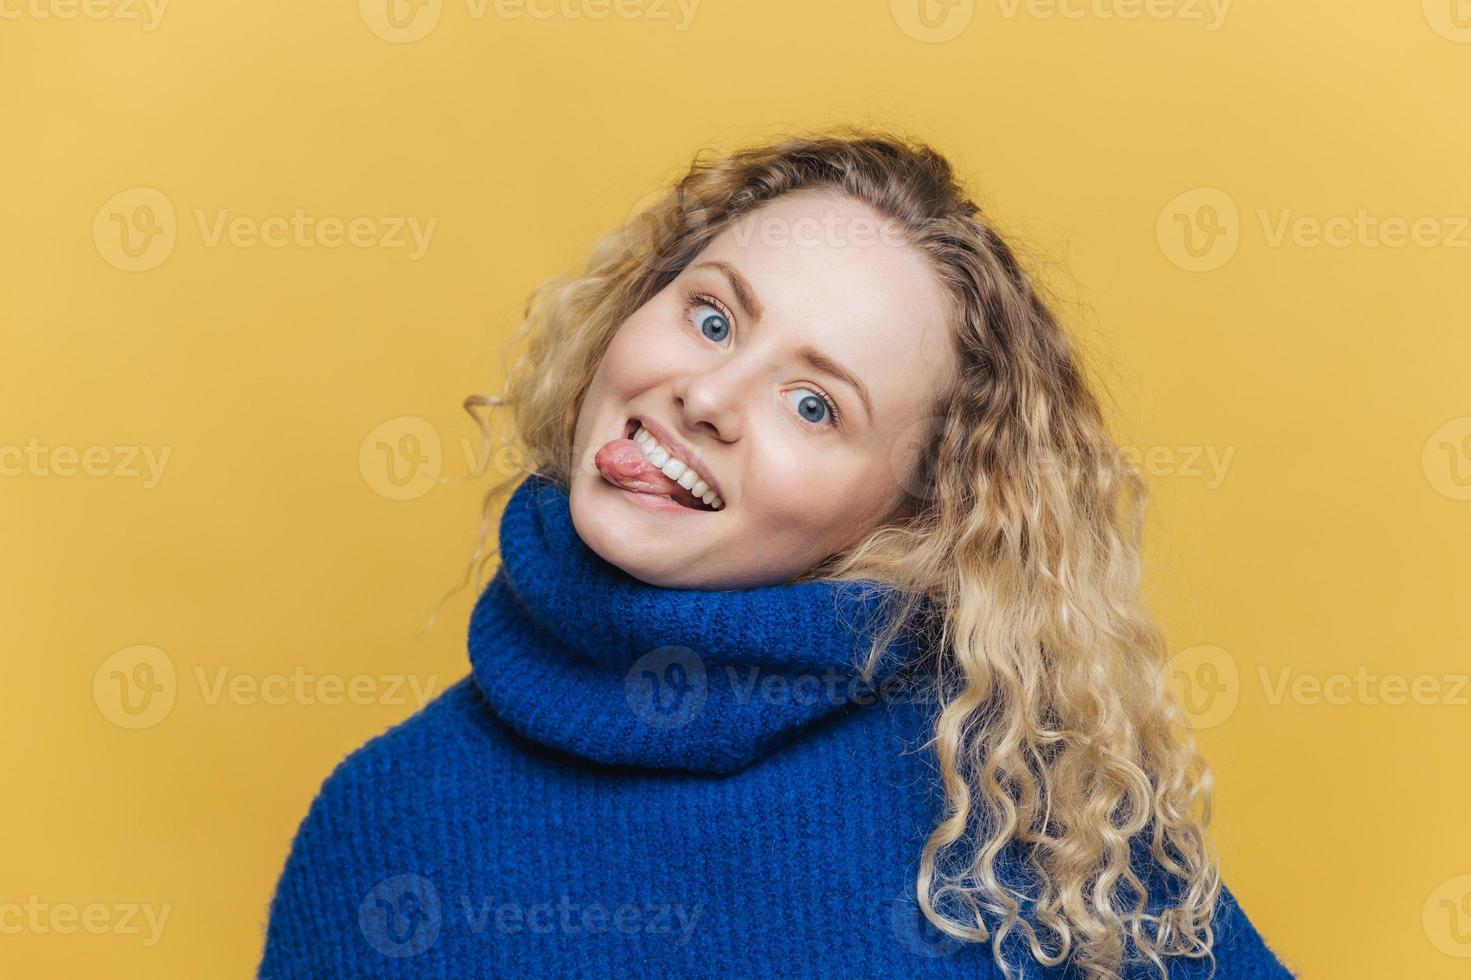 divertente comica giovane donna riccia con espressione positiva, mostra la lingua, si diverte con gli amici, indossa un maglione blu, fa smorfia, isolata su sfondo giallo studio. persone e concetto di divertimento. foto